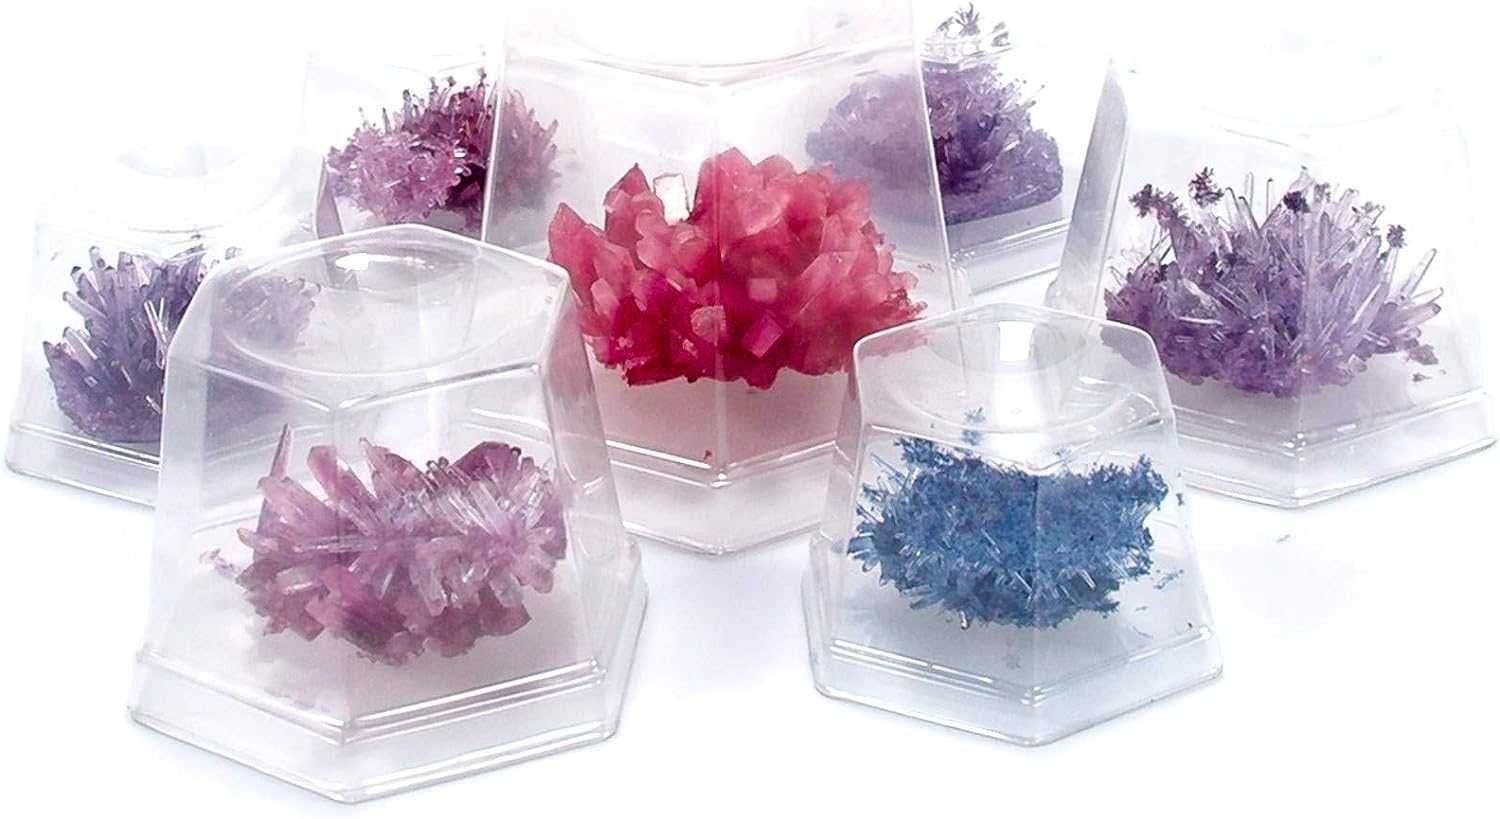 Набор опыты с кристаллами, вырасти 7 кристаллов Crystal Science Kit